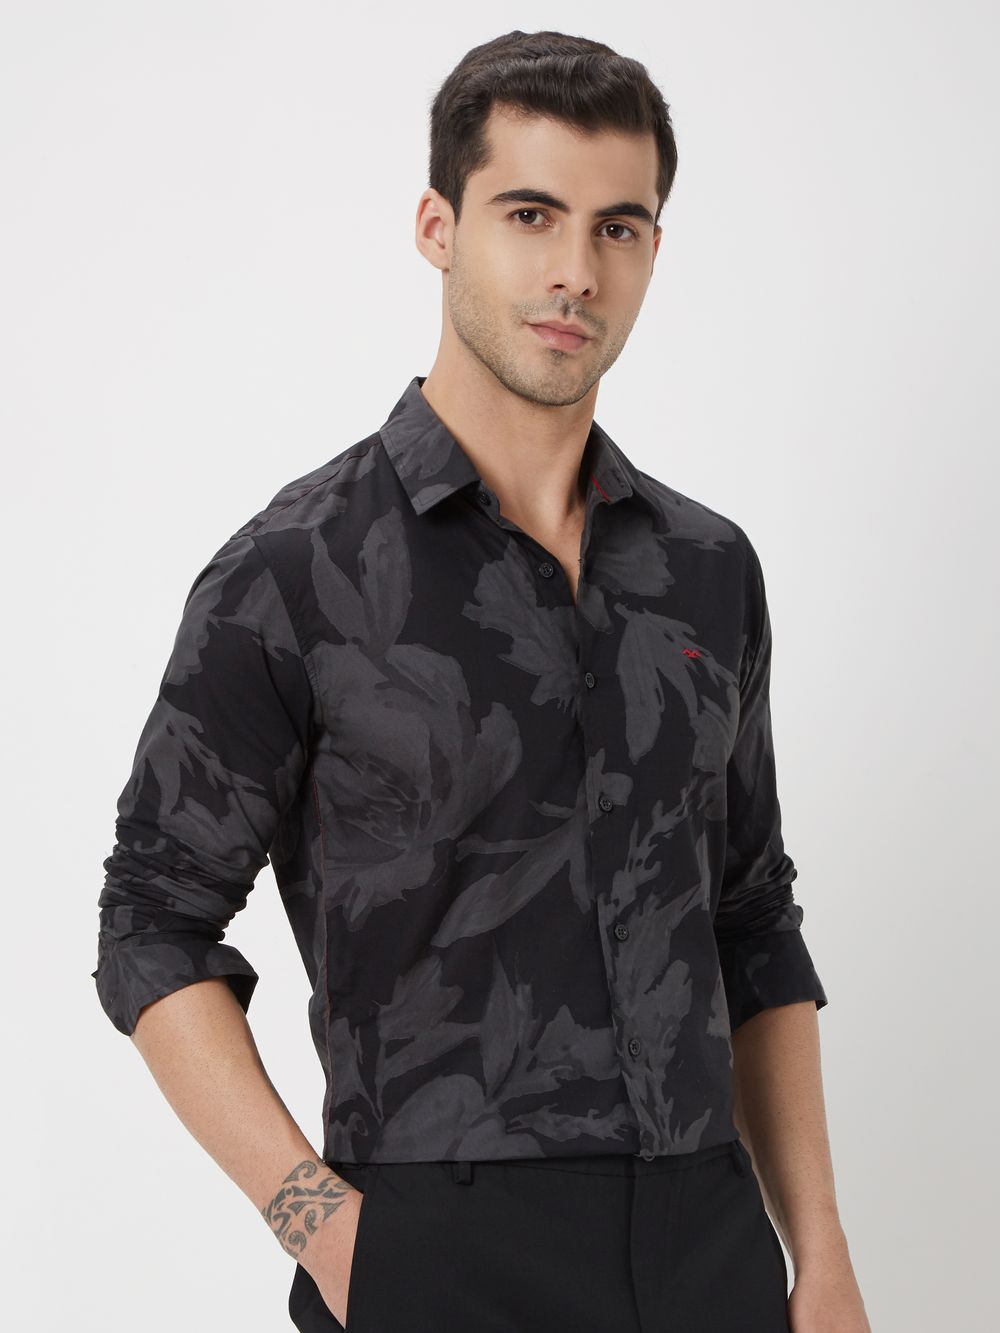 Black & Grey Floral Print Slim Fit Casual Shirt